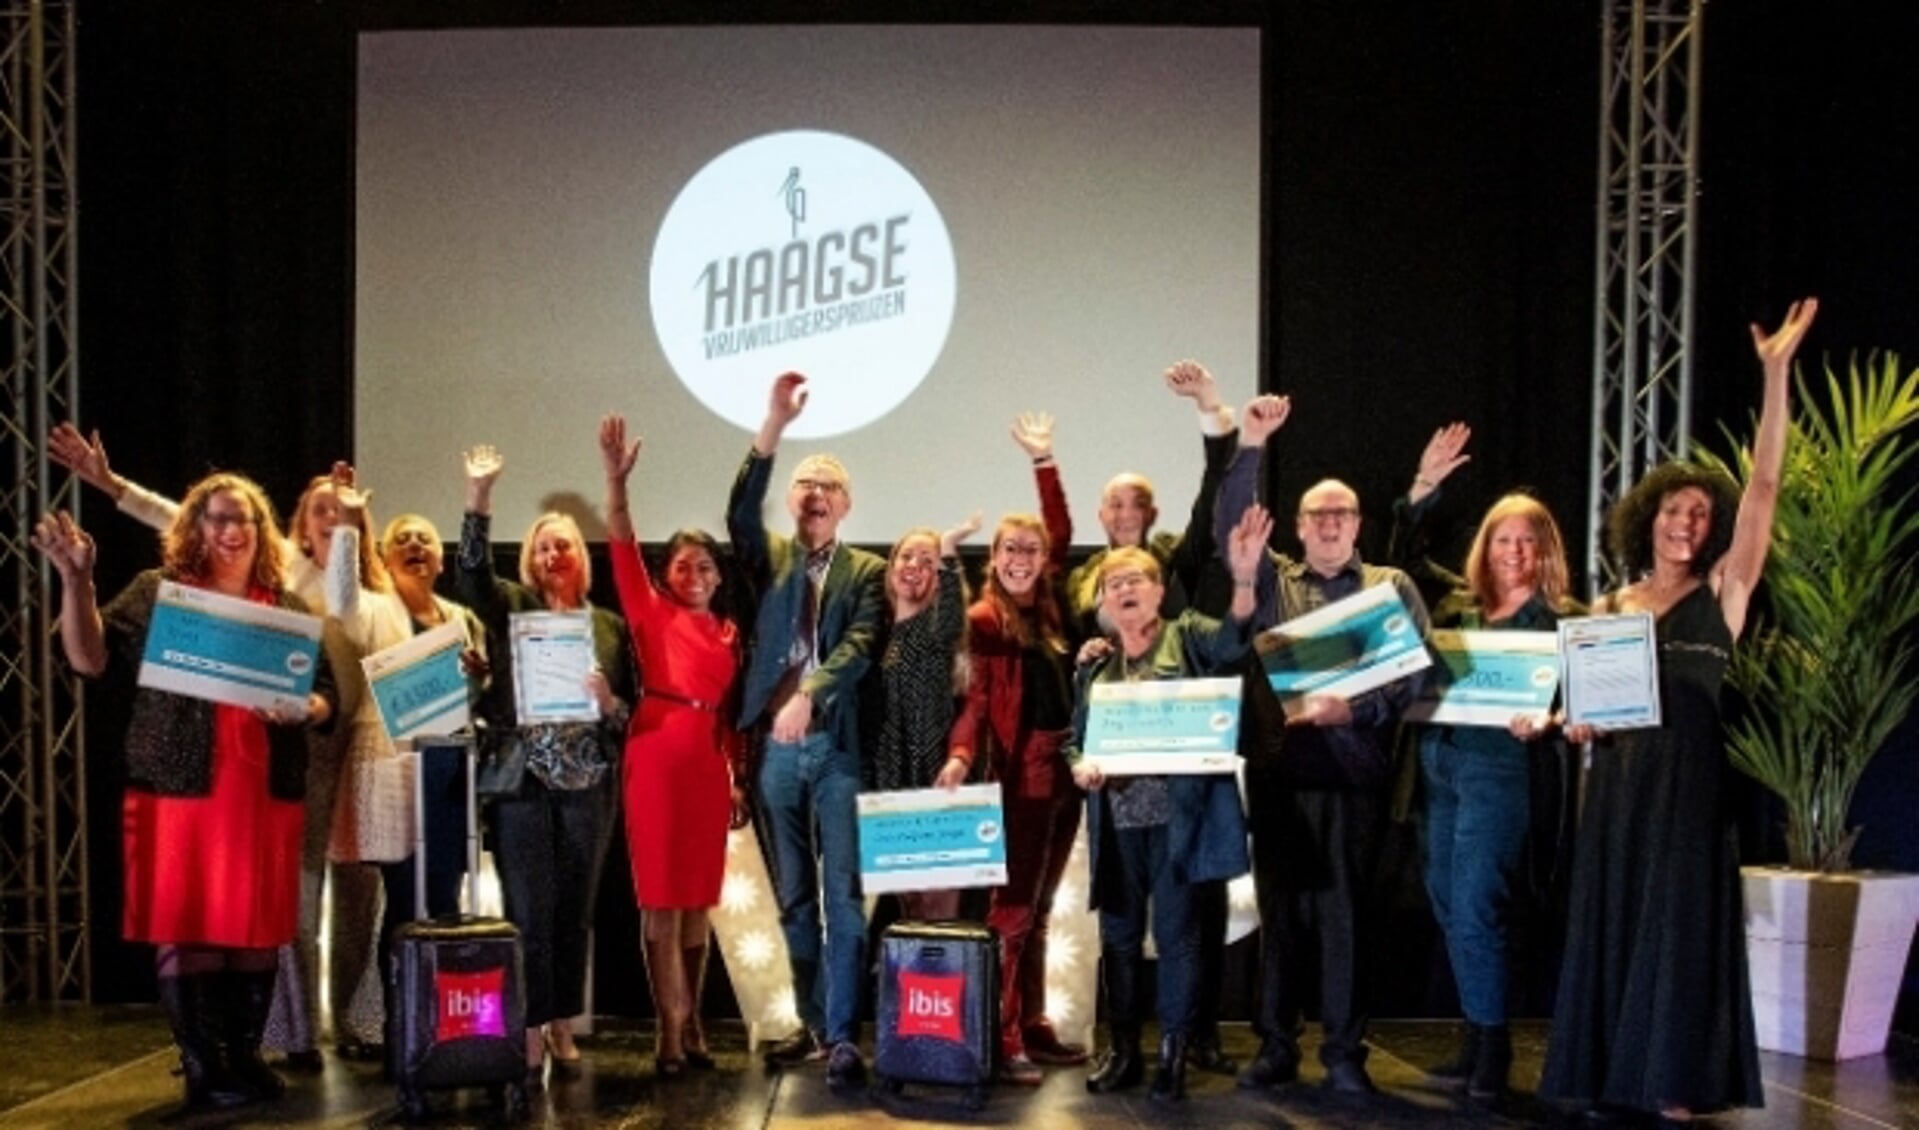 Vrijwilligerswerk heeft in 2020 een nieuwe dimensie gekregen. Op de foto: winnaars Haagse Vrijwilligersprijzen 2019. Foto: pr